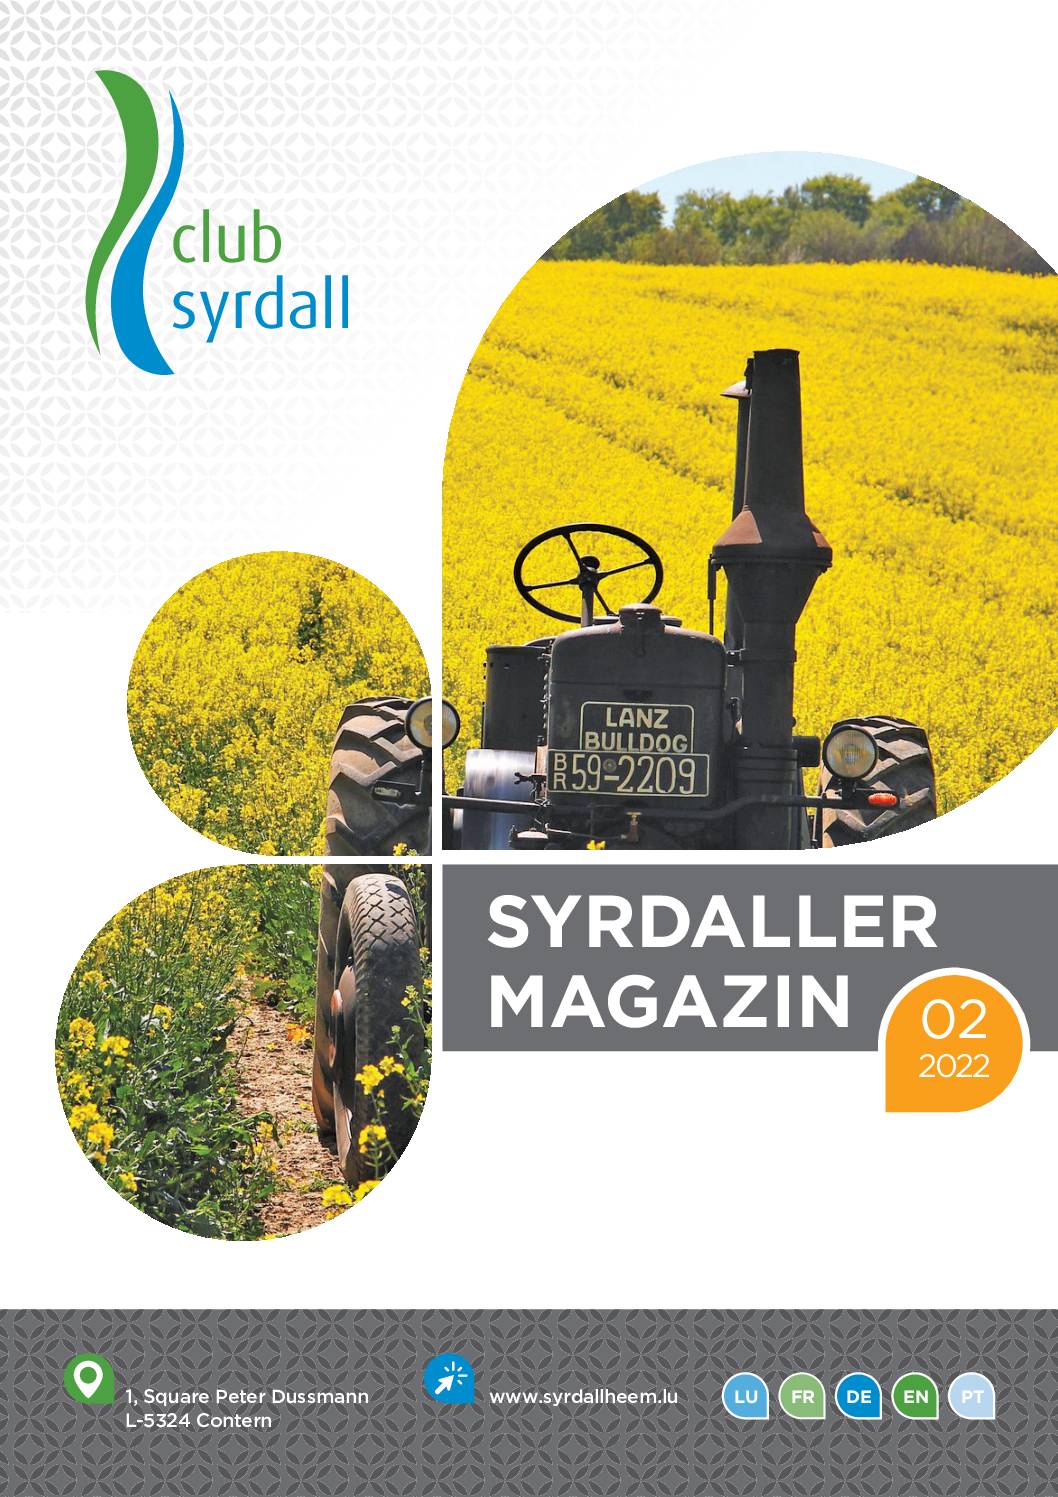 club syrdall Bro Syrdaller Magazin 02_2022 Web 85076 (1)